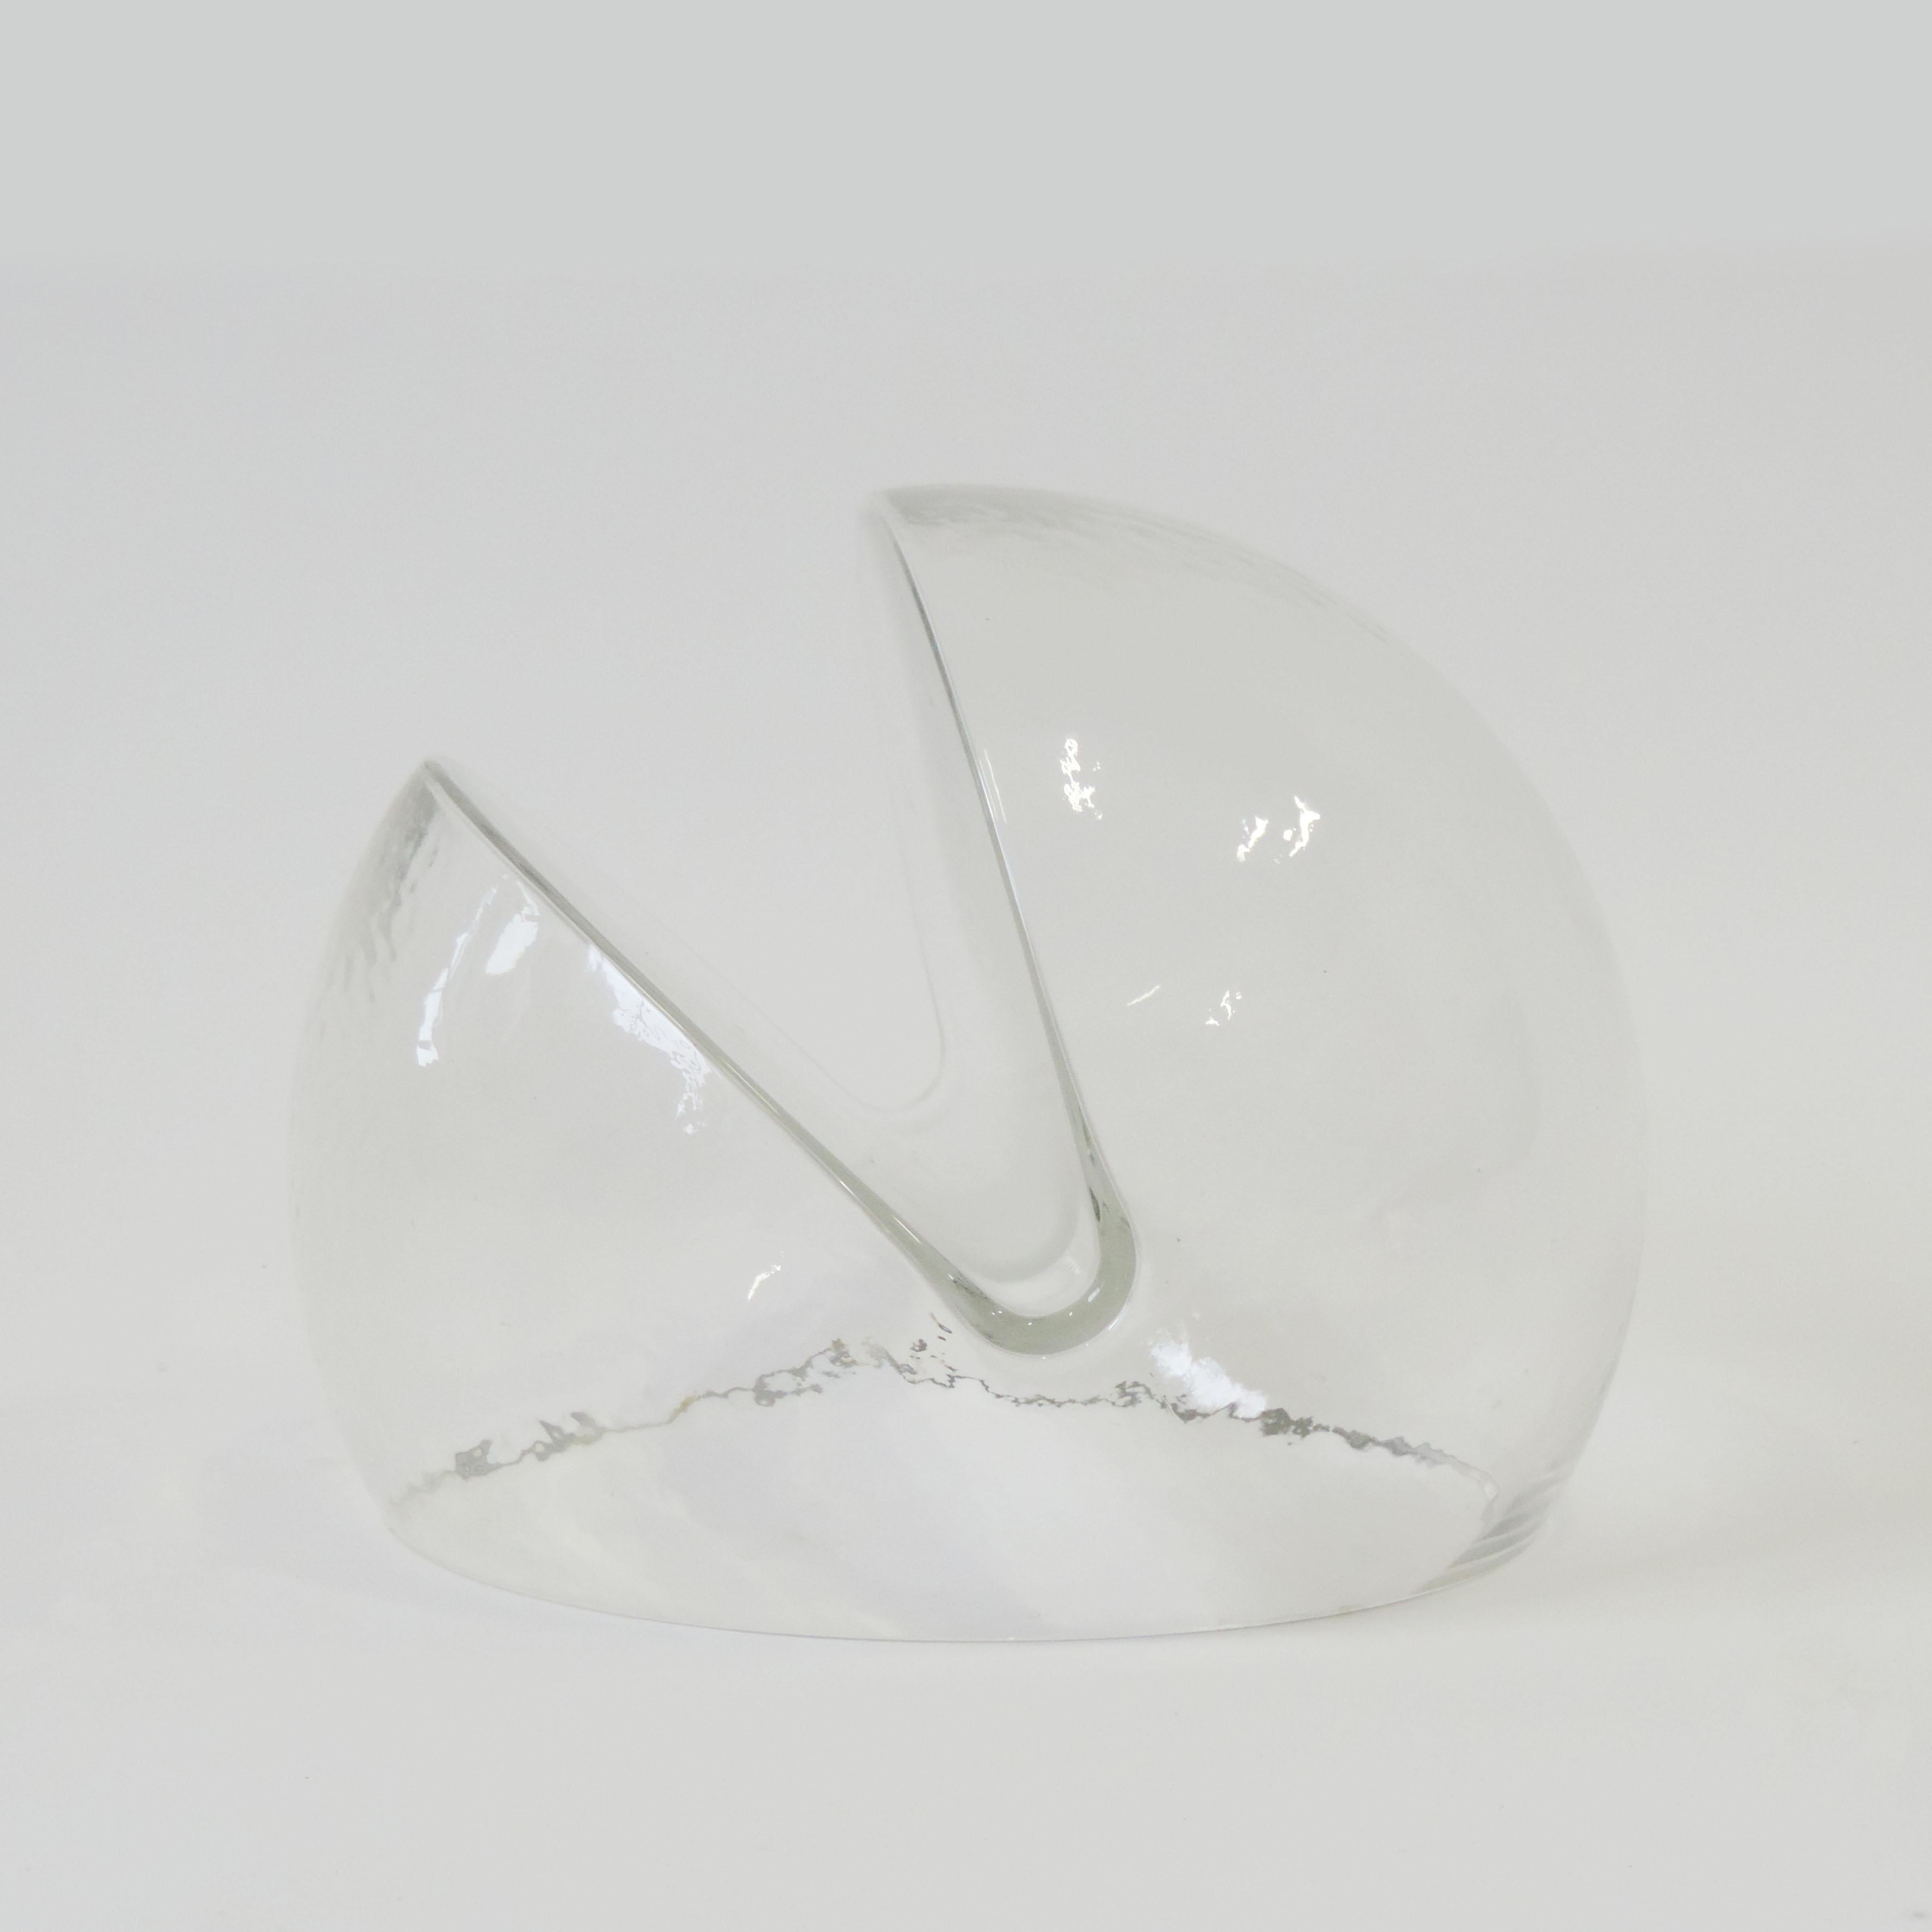 Italian Toni Zuccheri Murano Glass Paper Holder for VeArt, Italy, 1970s For Sale